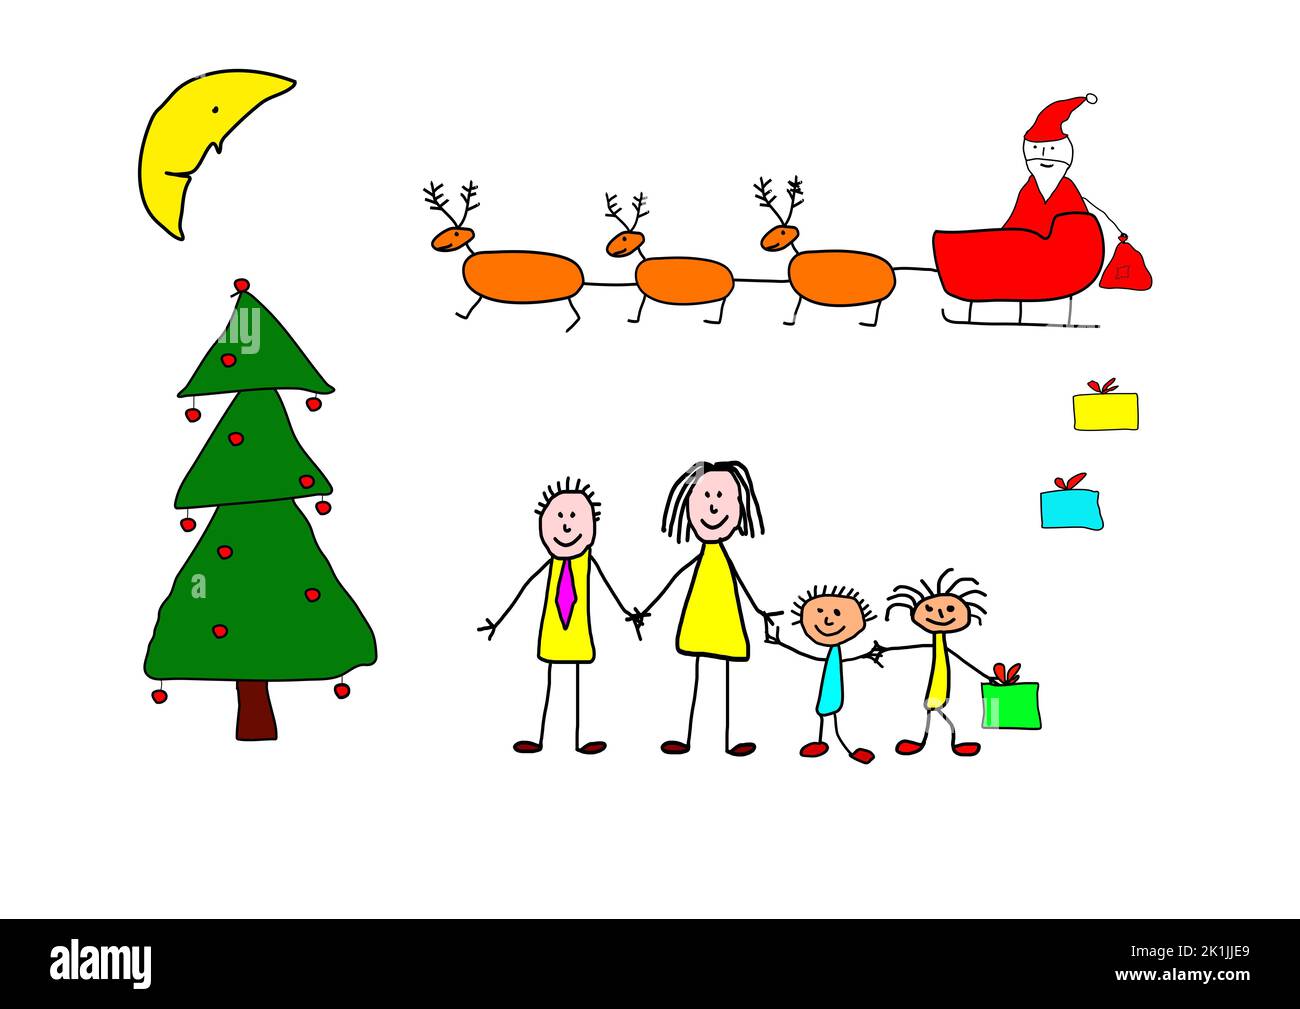 Weihnachtskonzept, gezeichnet von einem Kind. Der Weihnachtsmann kam mit seinem Rentierschlitten an und brachte der ganzen Familie Geschenke mit. Stockfoto